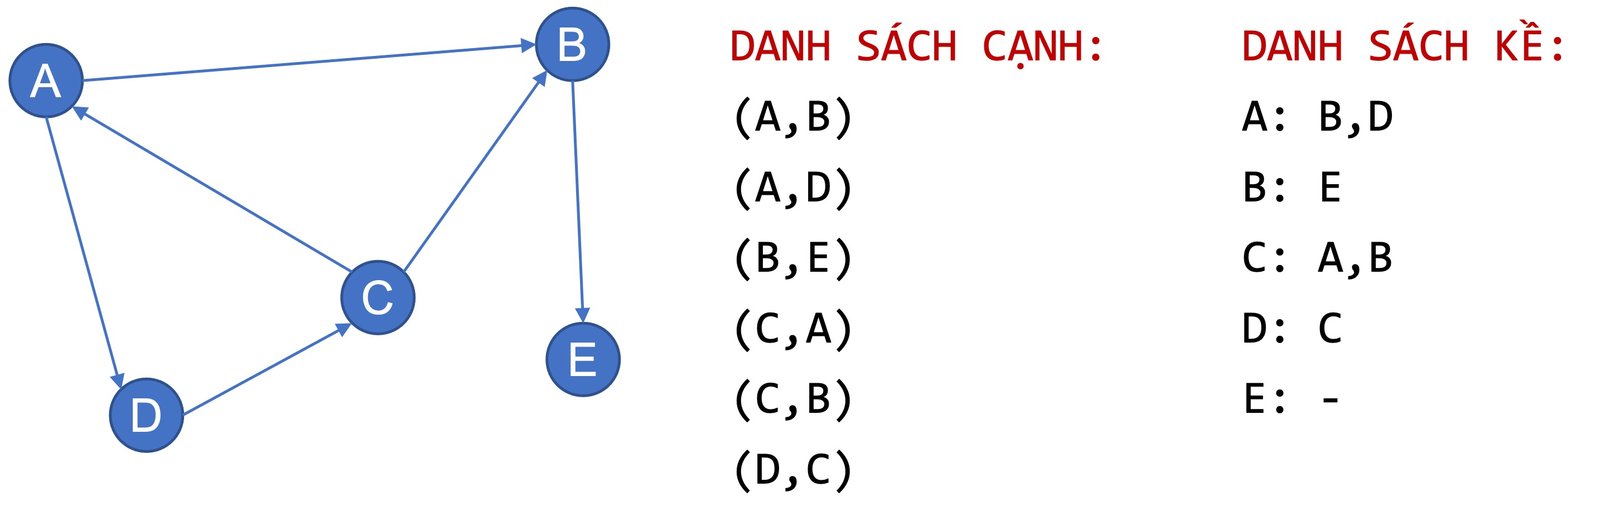 Hình 9. Ví dụ về cách biểu diễn đồ thị bằng (a) danh sách cạnh và (b) danh sách kề